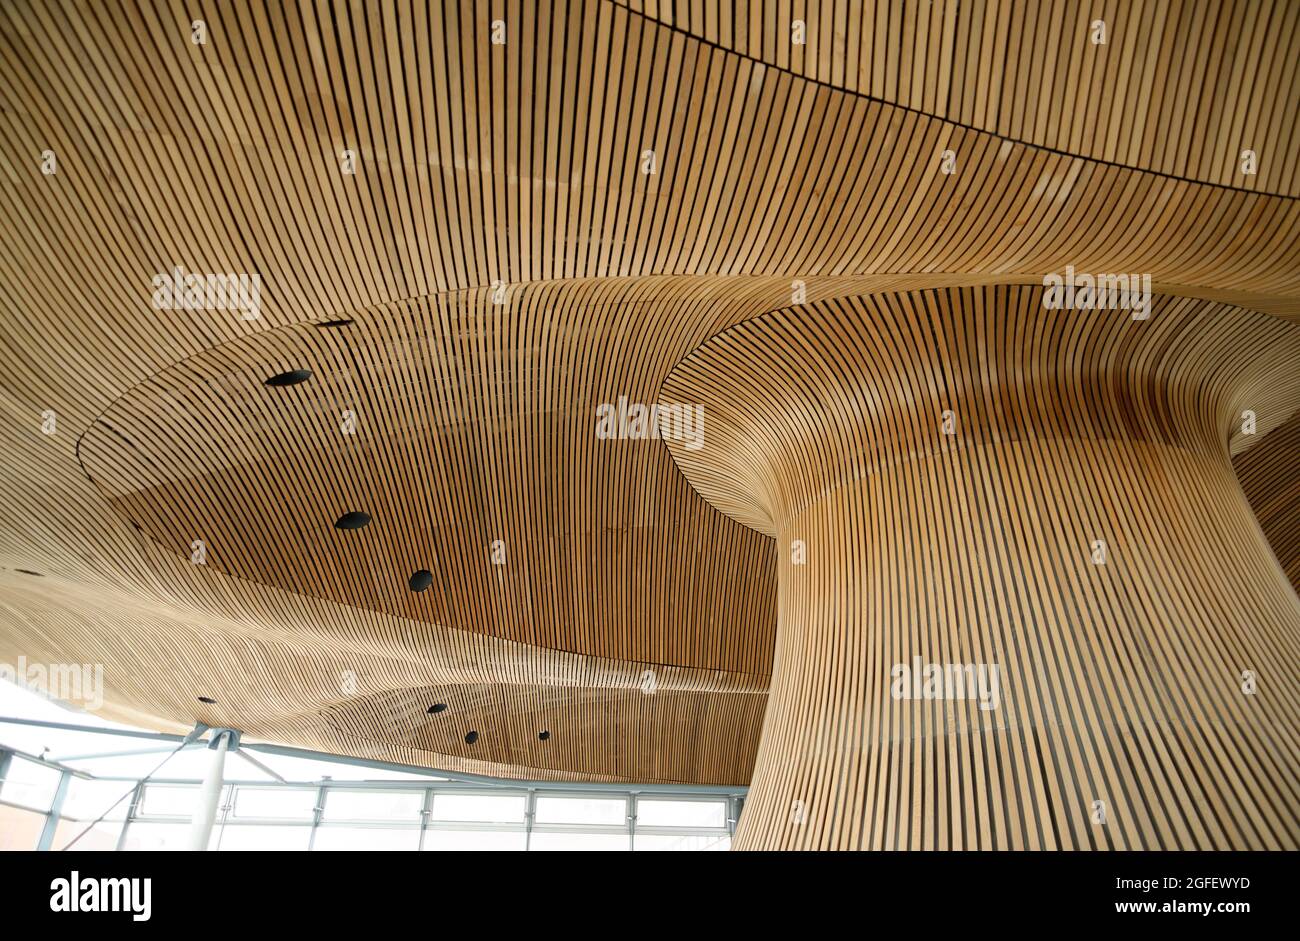 Im walisischen Parlamentsgebäude in Cardiff Bay, Wales. Gewellte, pilzartige Decke/Dach aus Zedernholz. Richard Rogers entwarf das Gebäude. Stockfoto